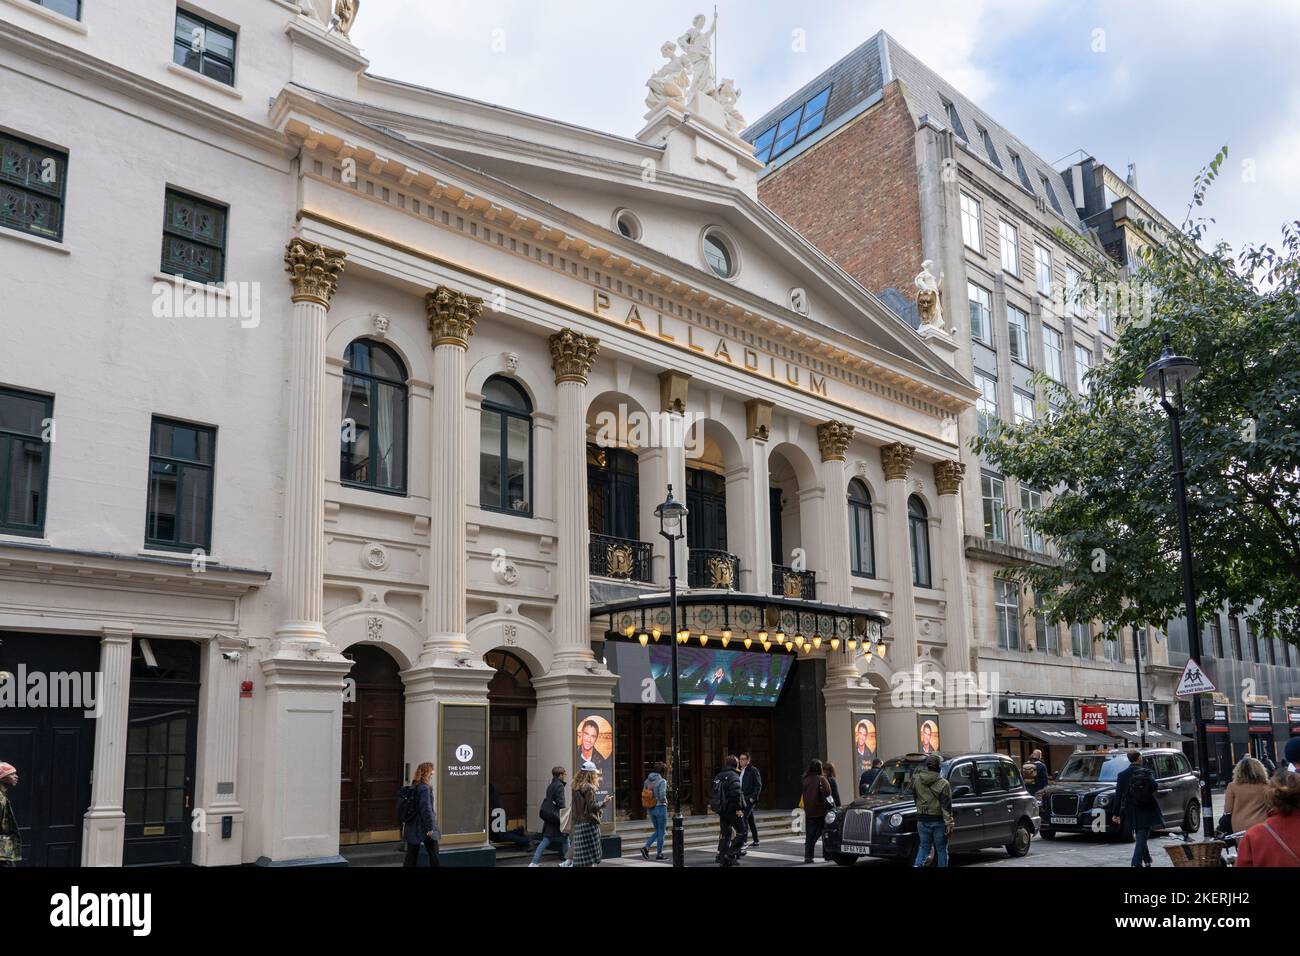 Le London Palladium est un théâtre classé de classe II West End situé sur Argyll Street, Londres, dans le célèbre quartier de Soho. Angleterre Banque D'Images